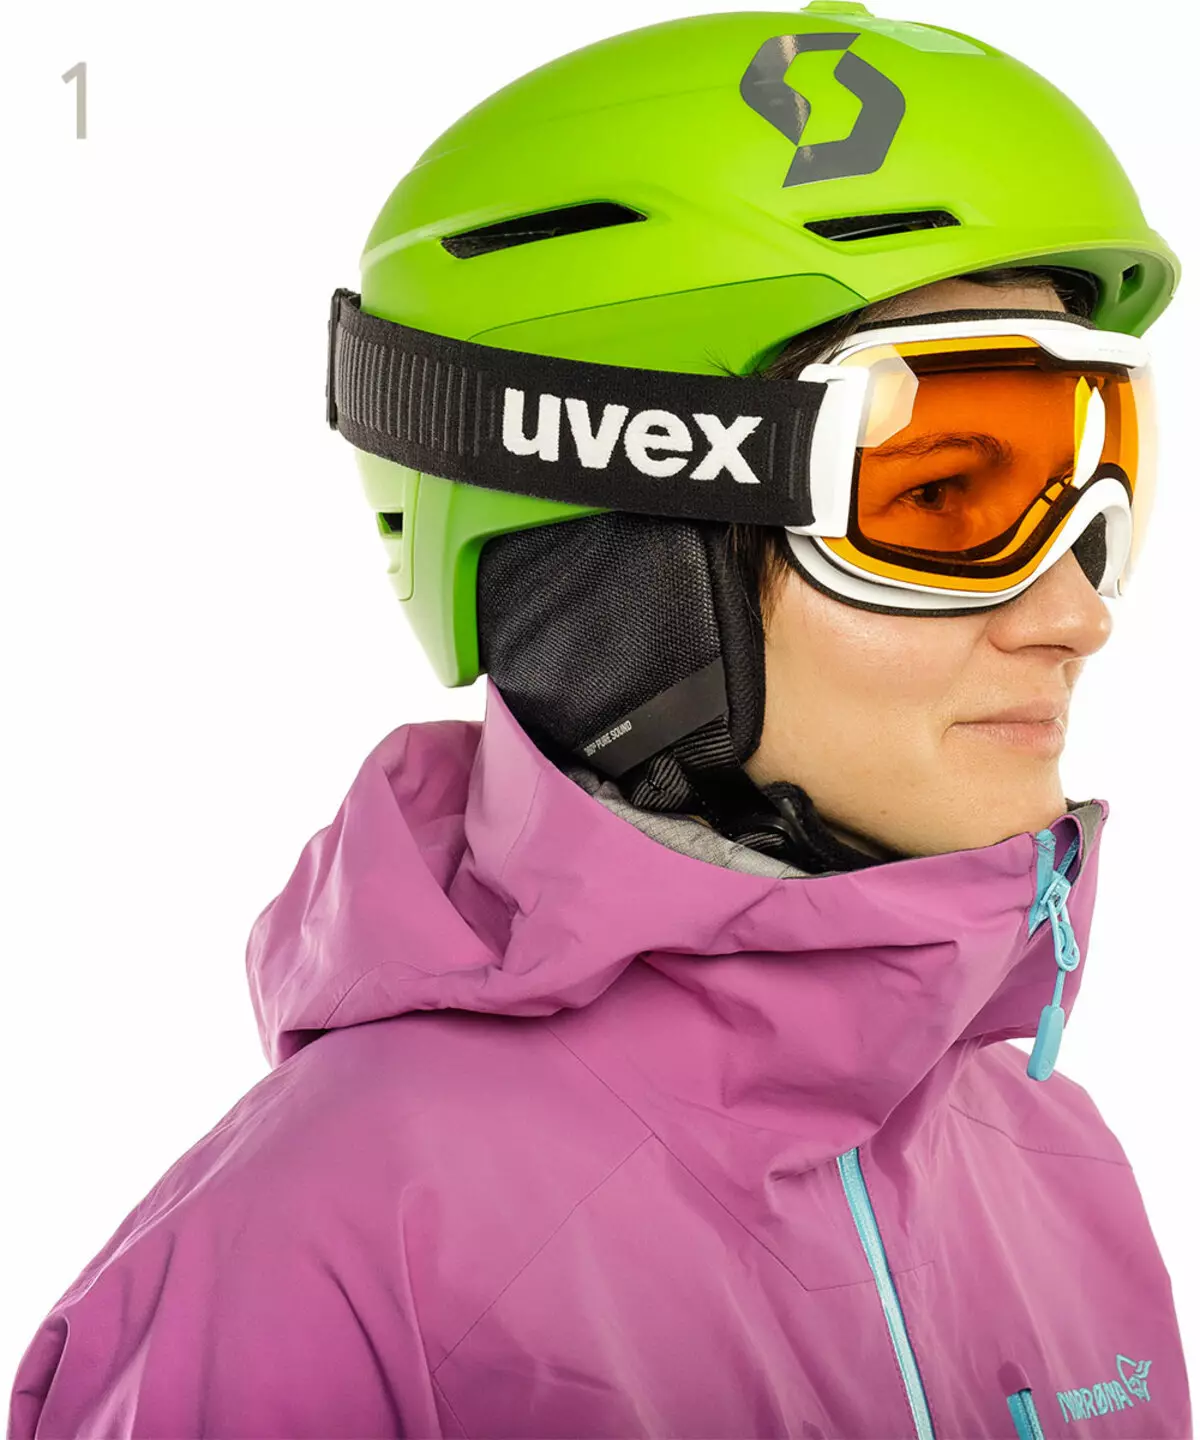 Kacamata ski: Cara milih dheweke? Bayi lan tingal liyane kanthi diopters, model olahraga kanggo ski. Tutup kanggo kaca tingal 8403_2